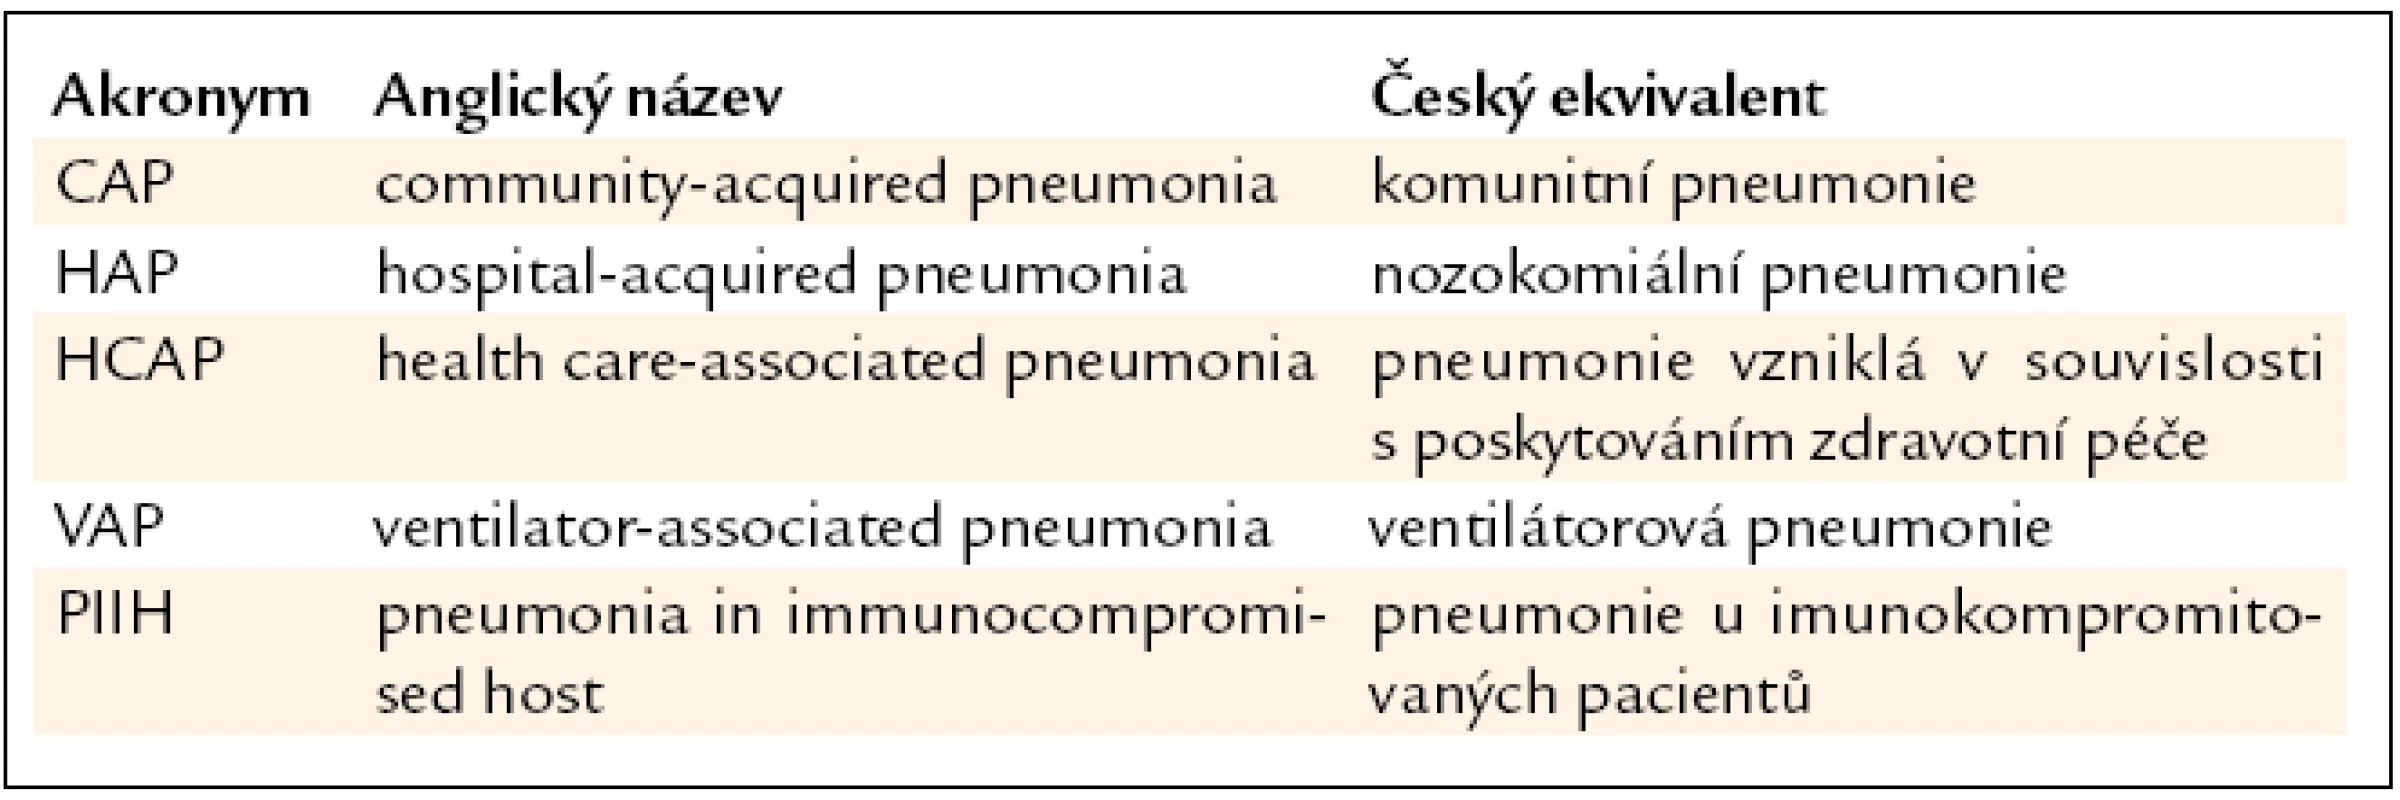 Nejčastěji rozeznávané typy pneumonií v anglicky psané literatuře [1].